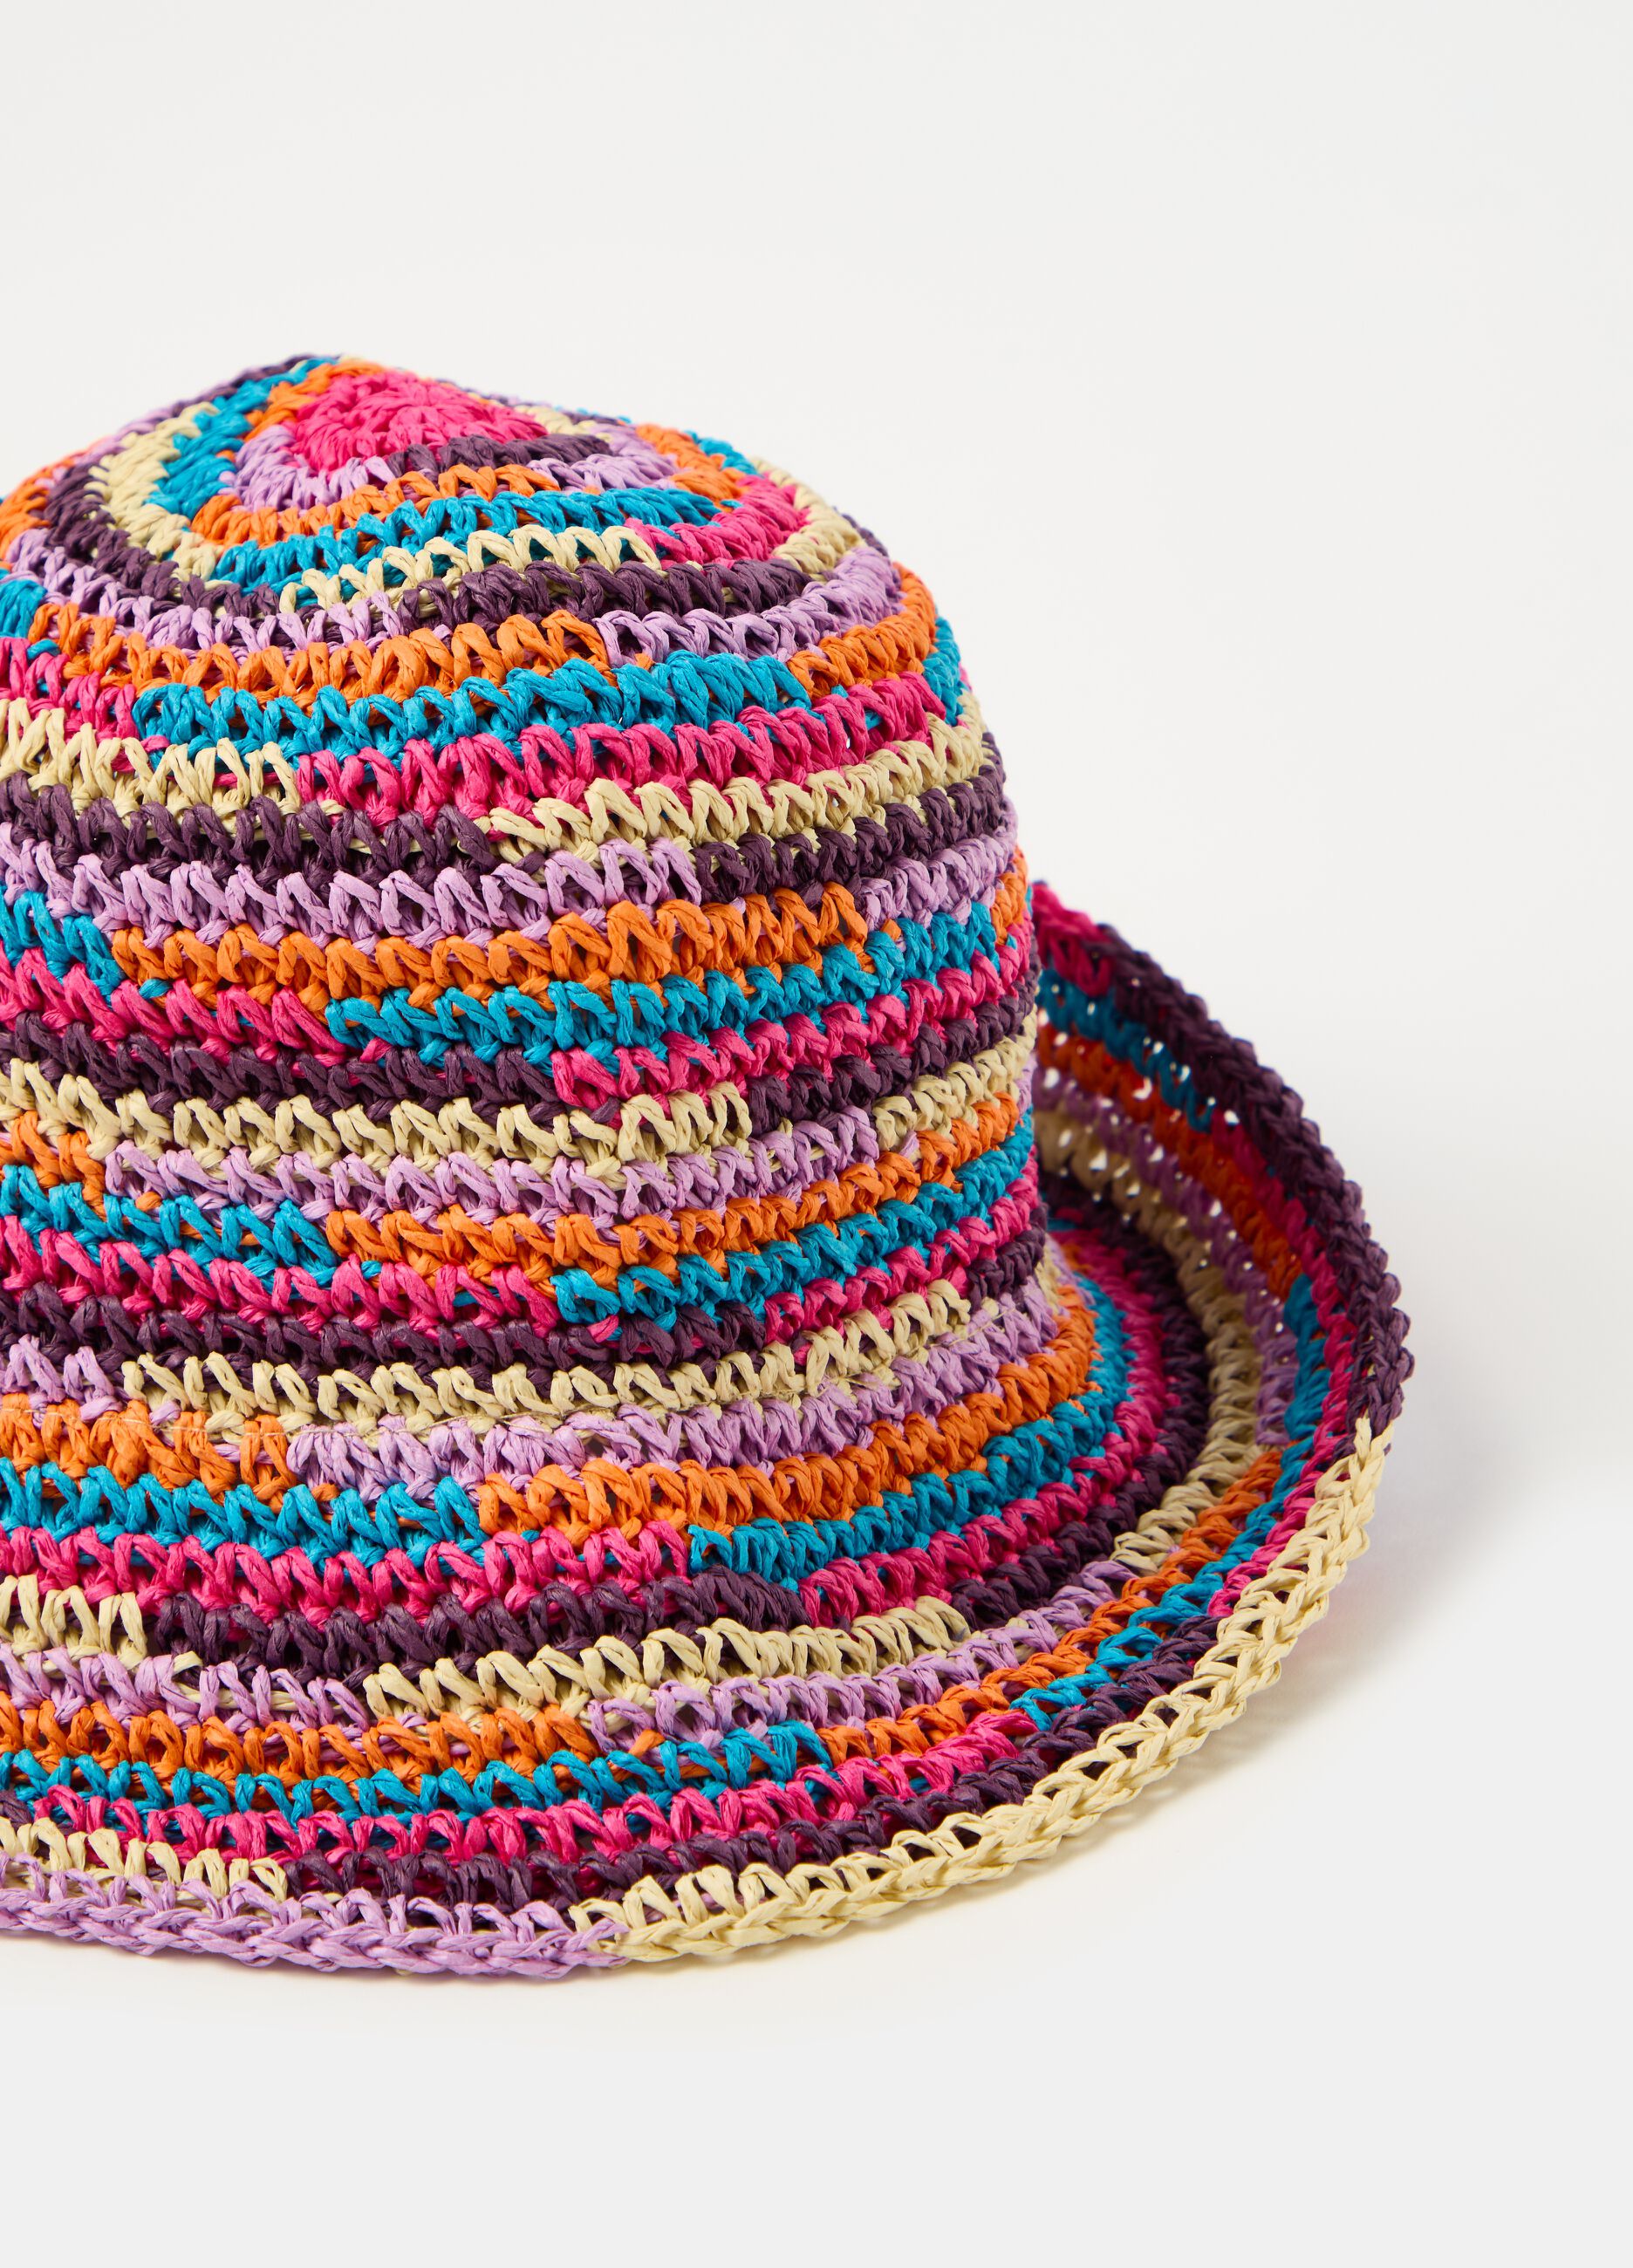 Multicoloured raffia hat